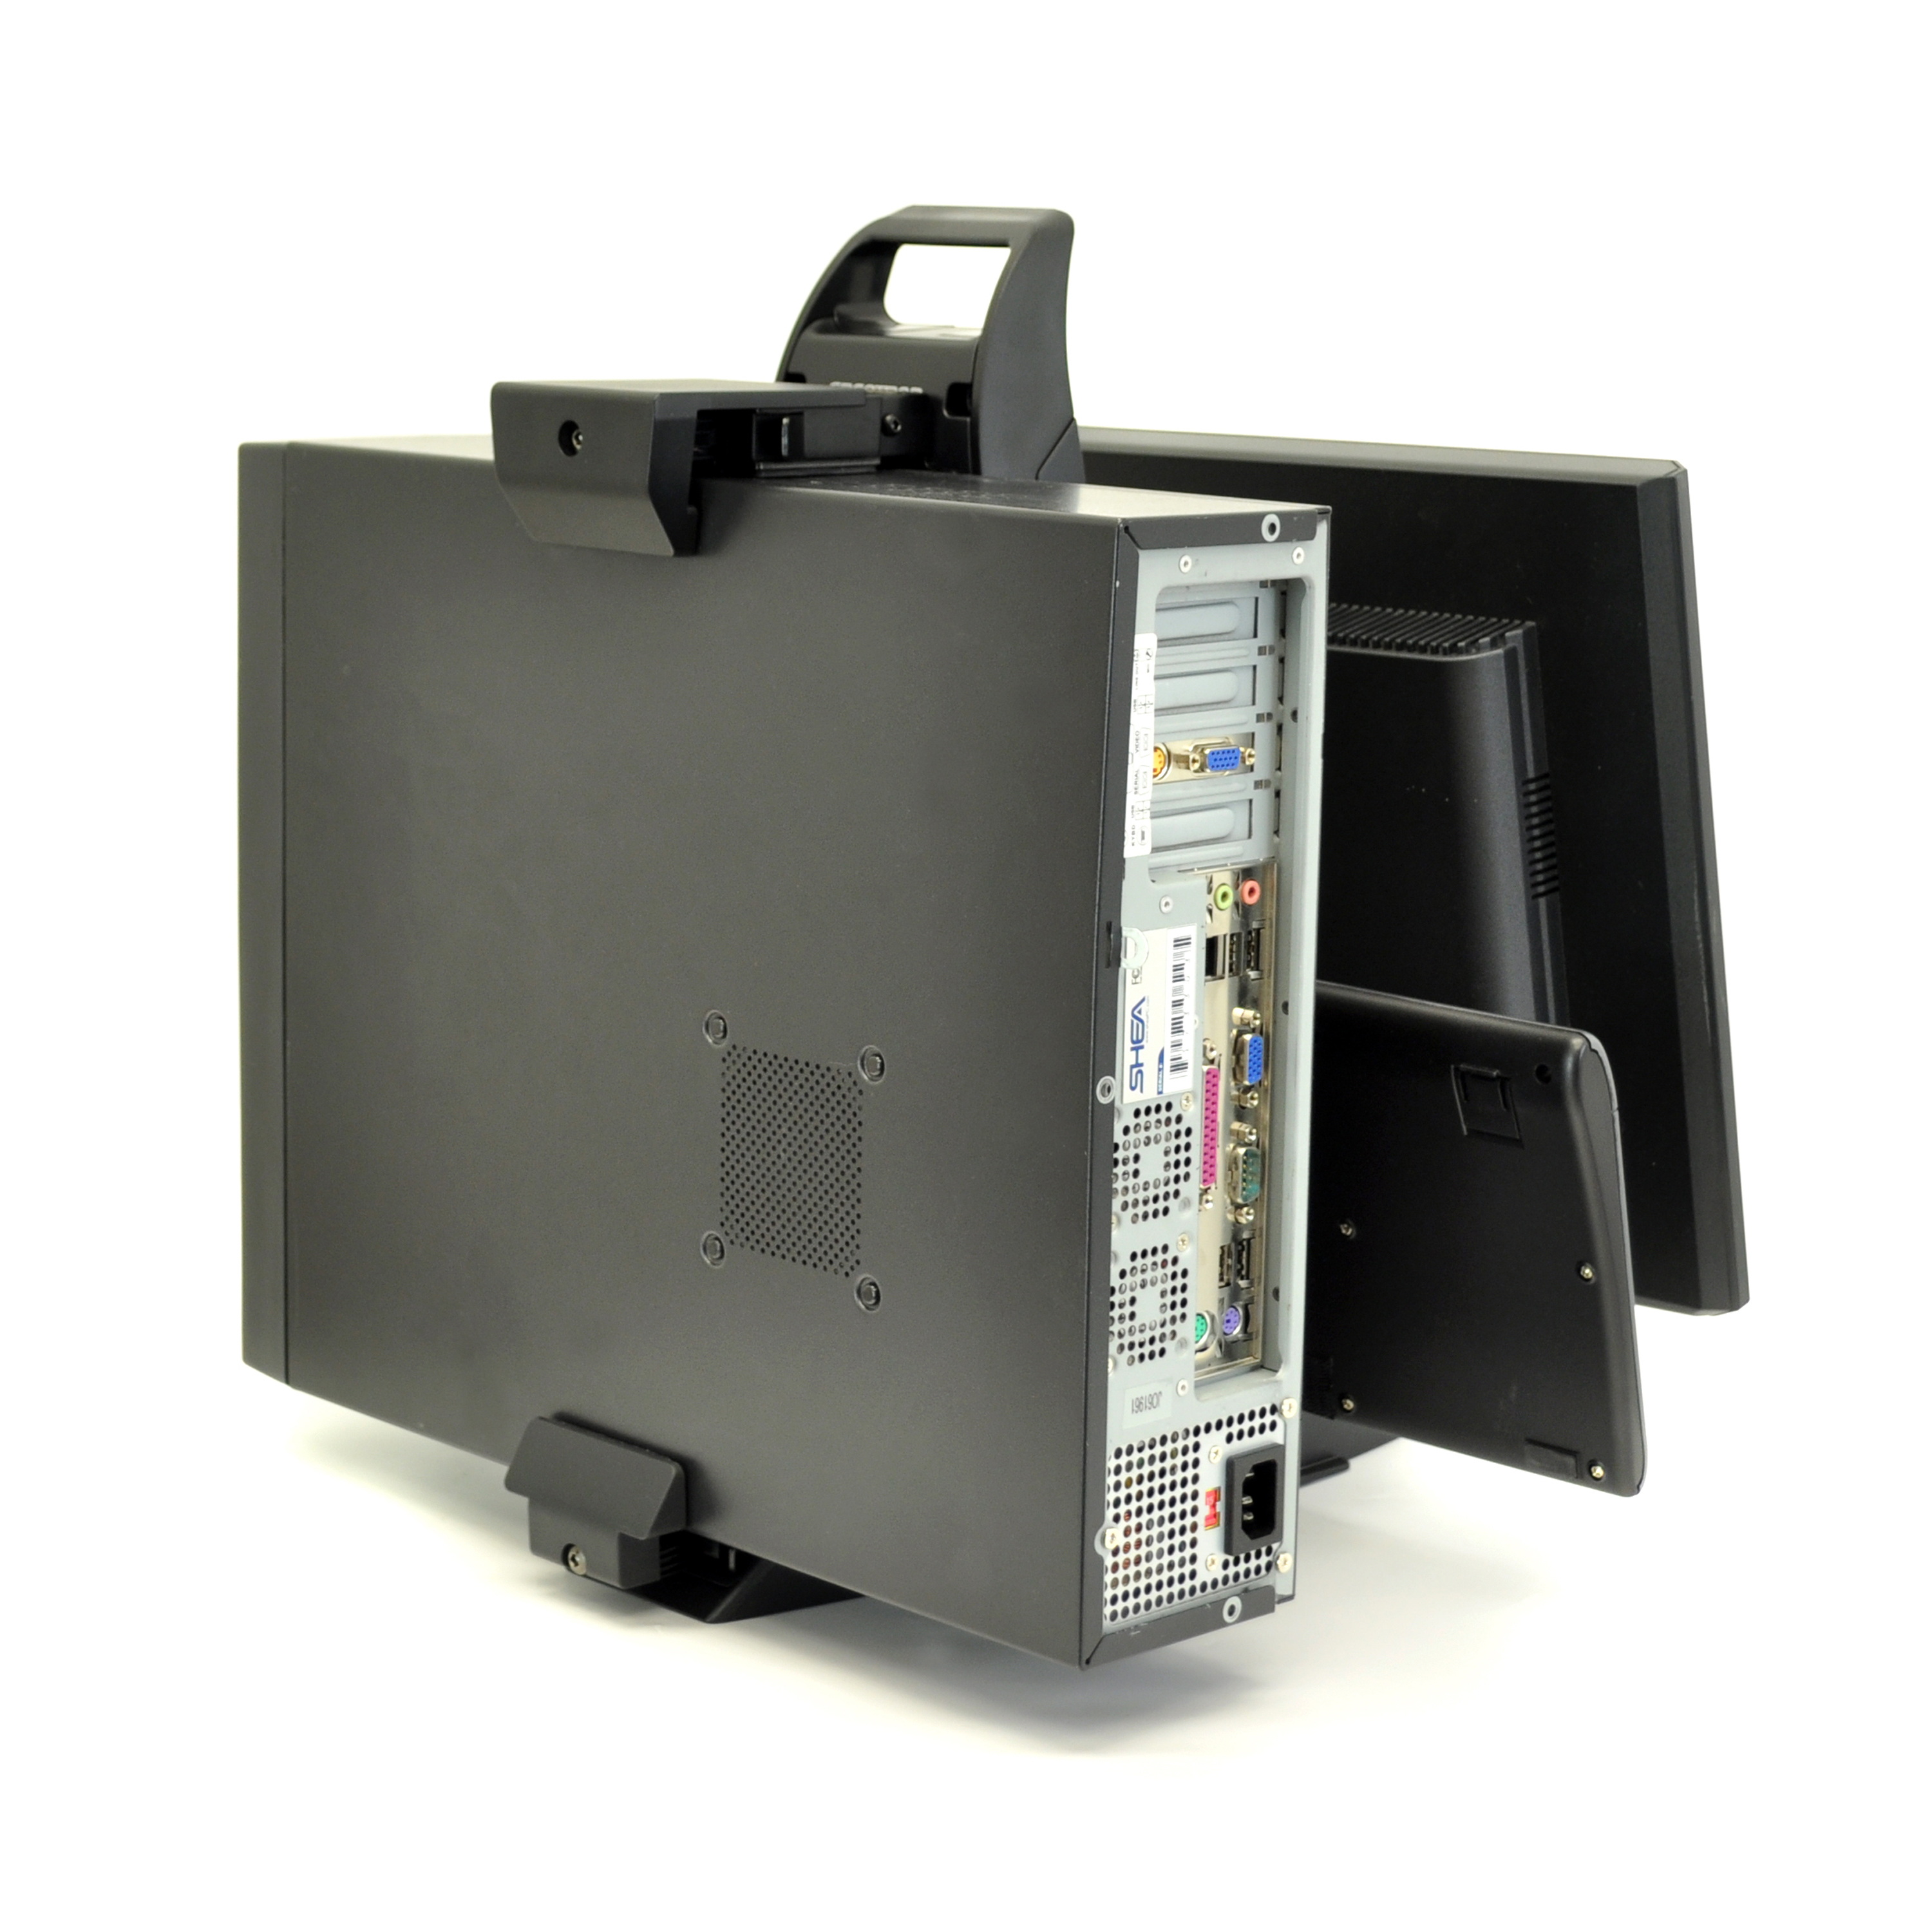 Soporte ajustable en altura Neo-Flex para Monitor de pared - PC Almacen